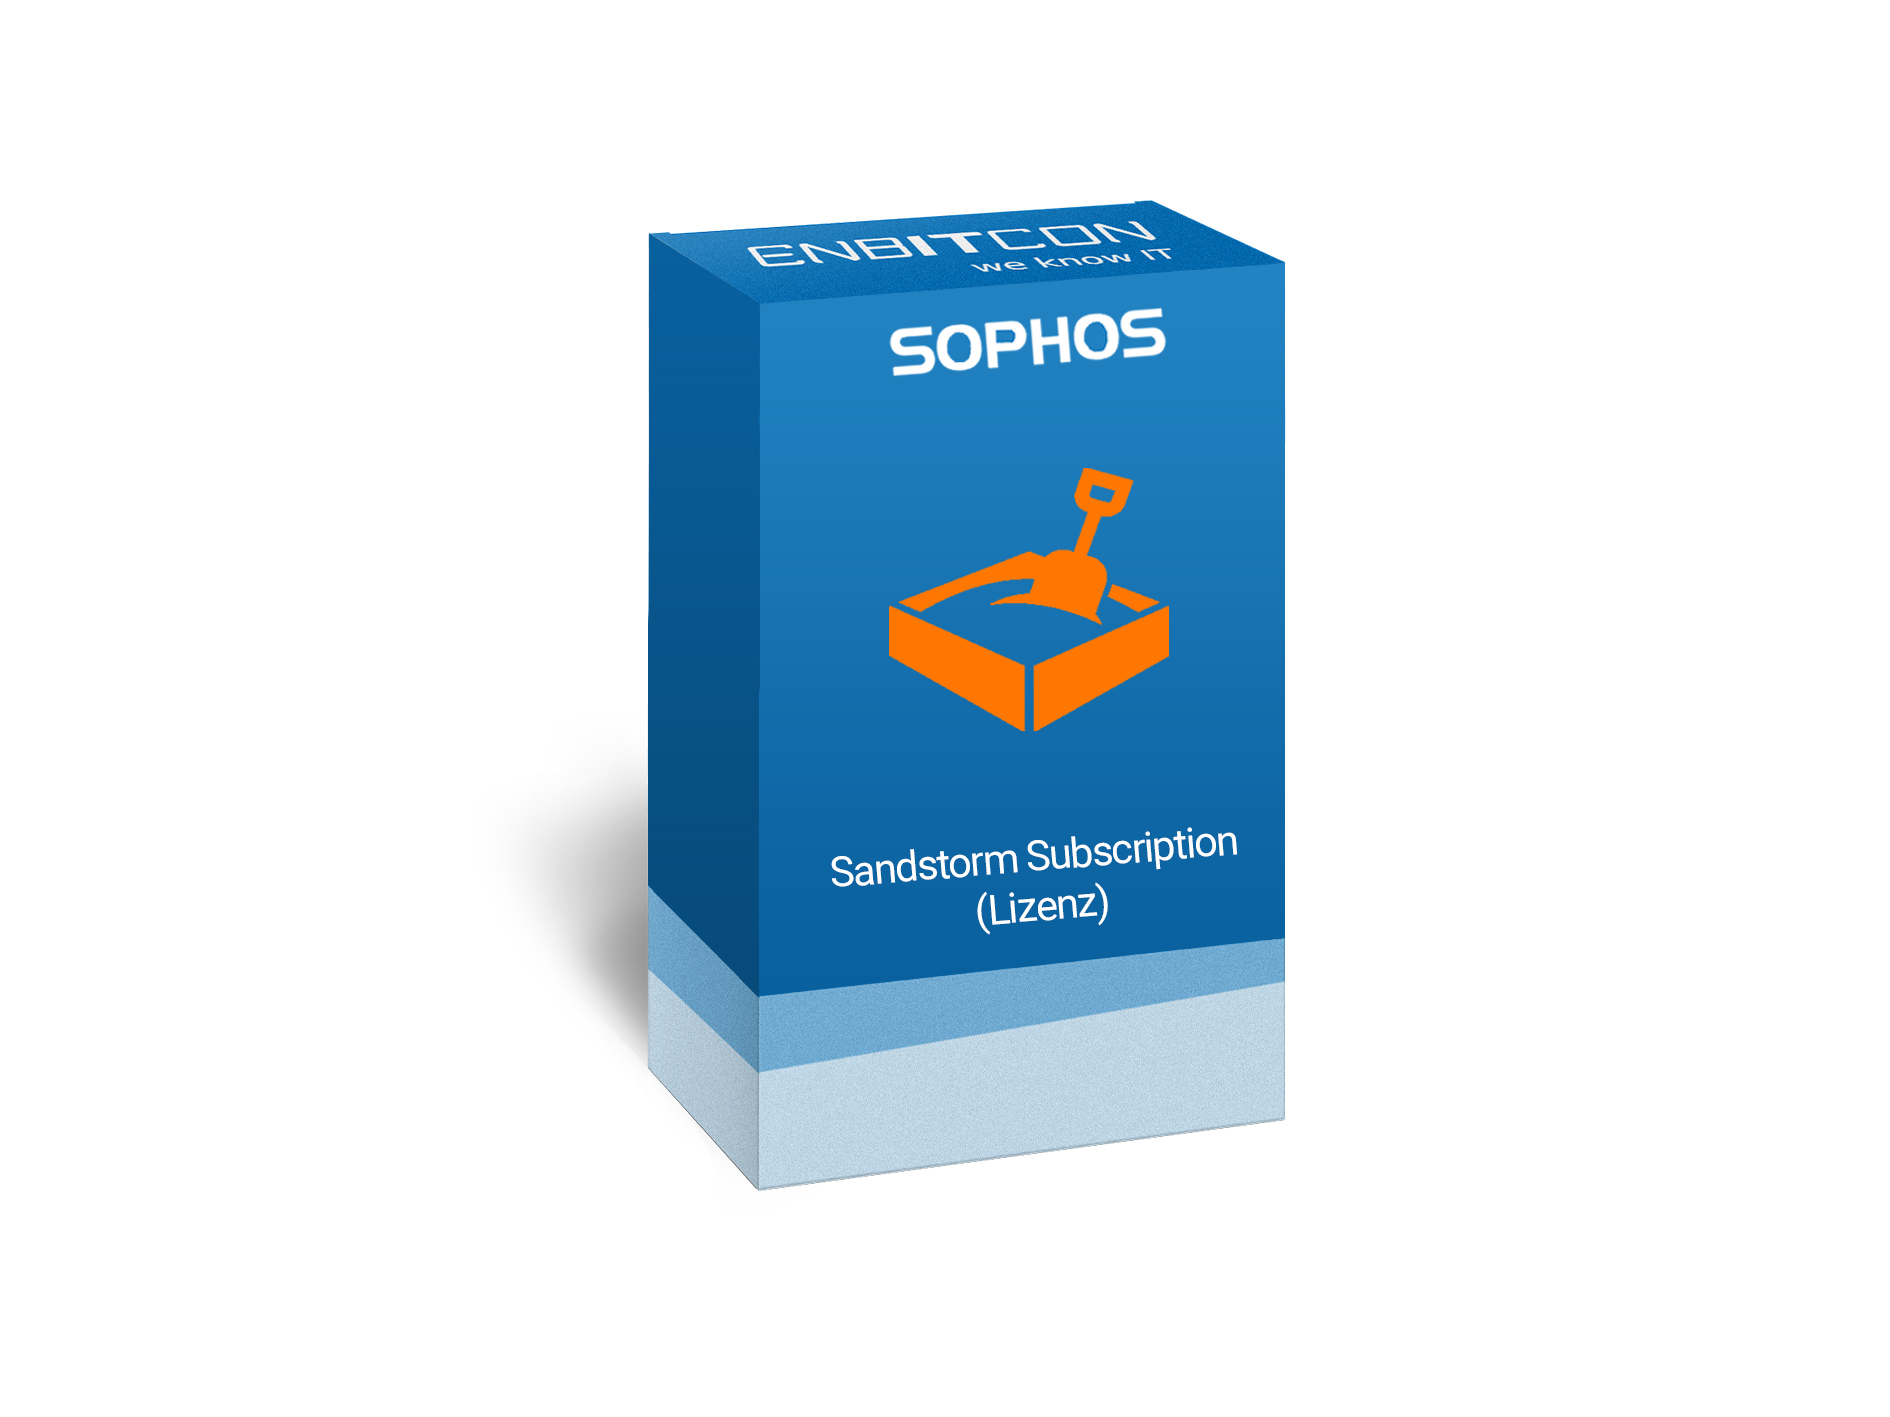 Sophos Sandstorm Subscription Lizenz Vorschaubild bestehend aus einem blauen Schild, indem sich eine orangene Truhe befindet